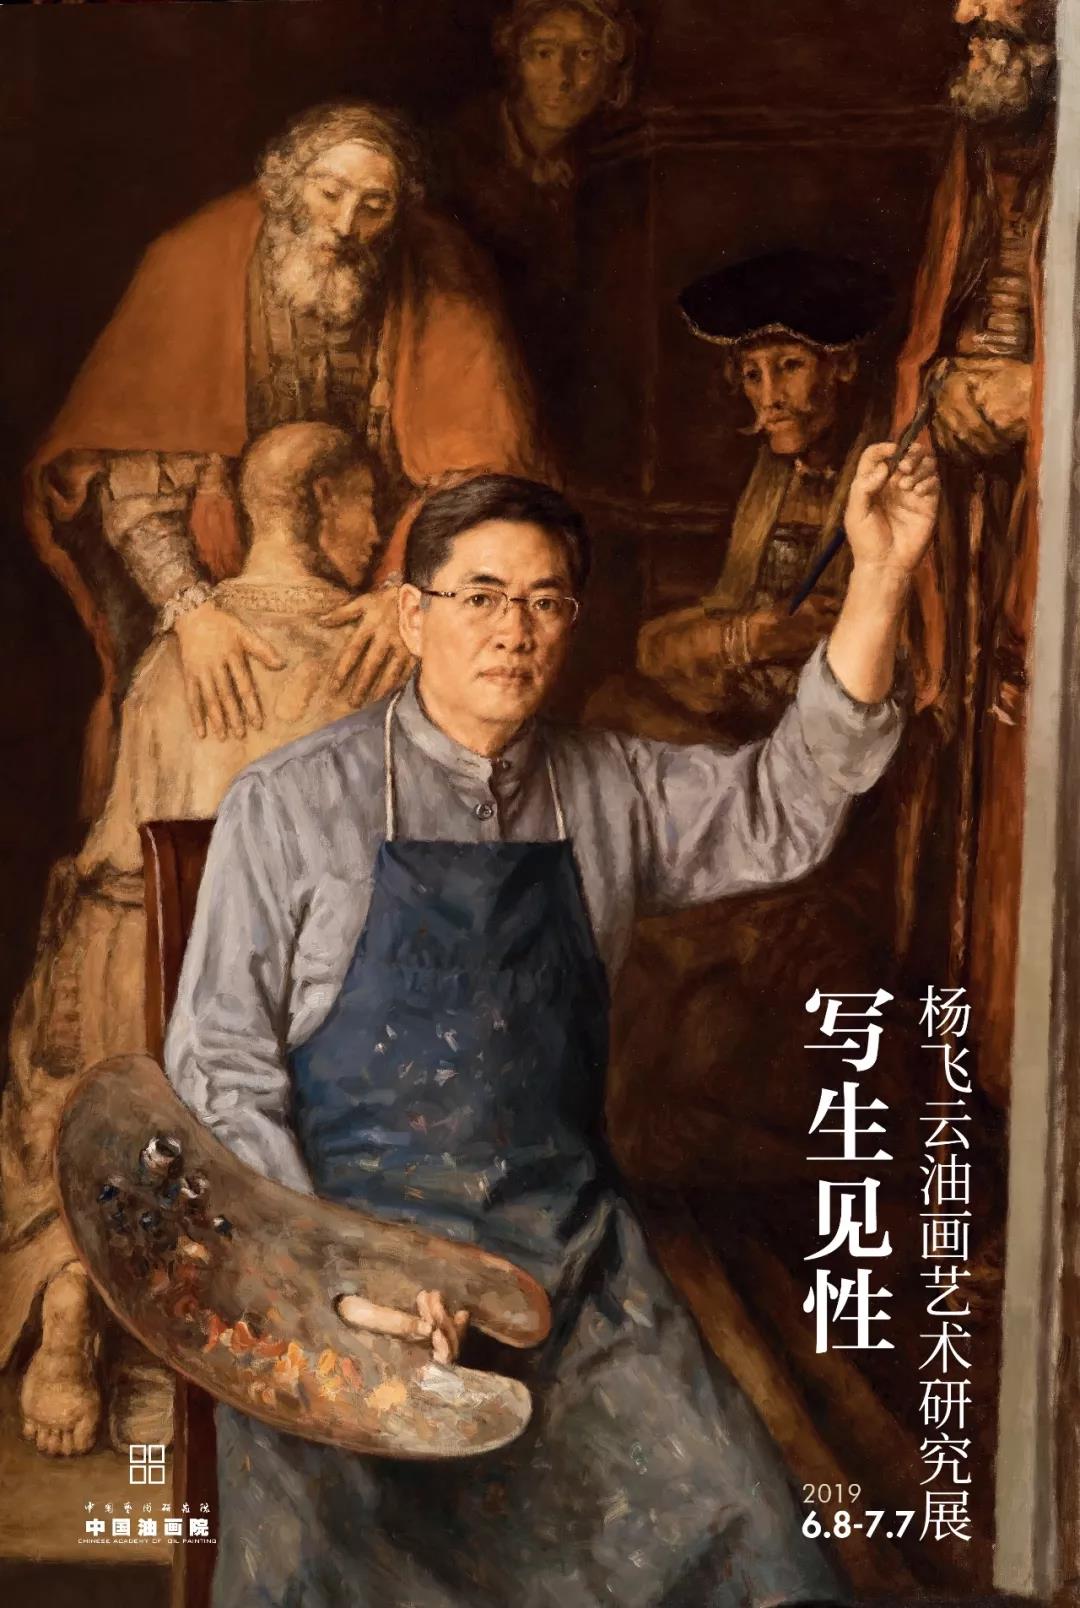 中国油画院油画家研究系列《写生见性》—杨飞云油画艺术研究展